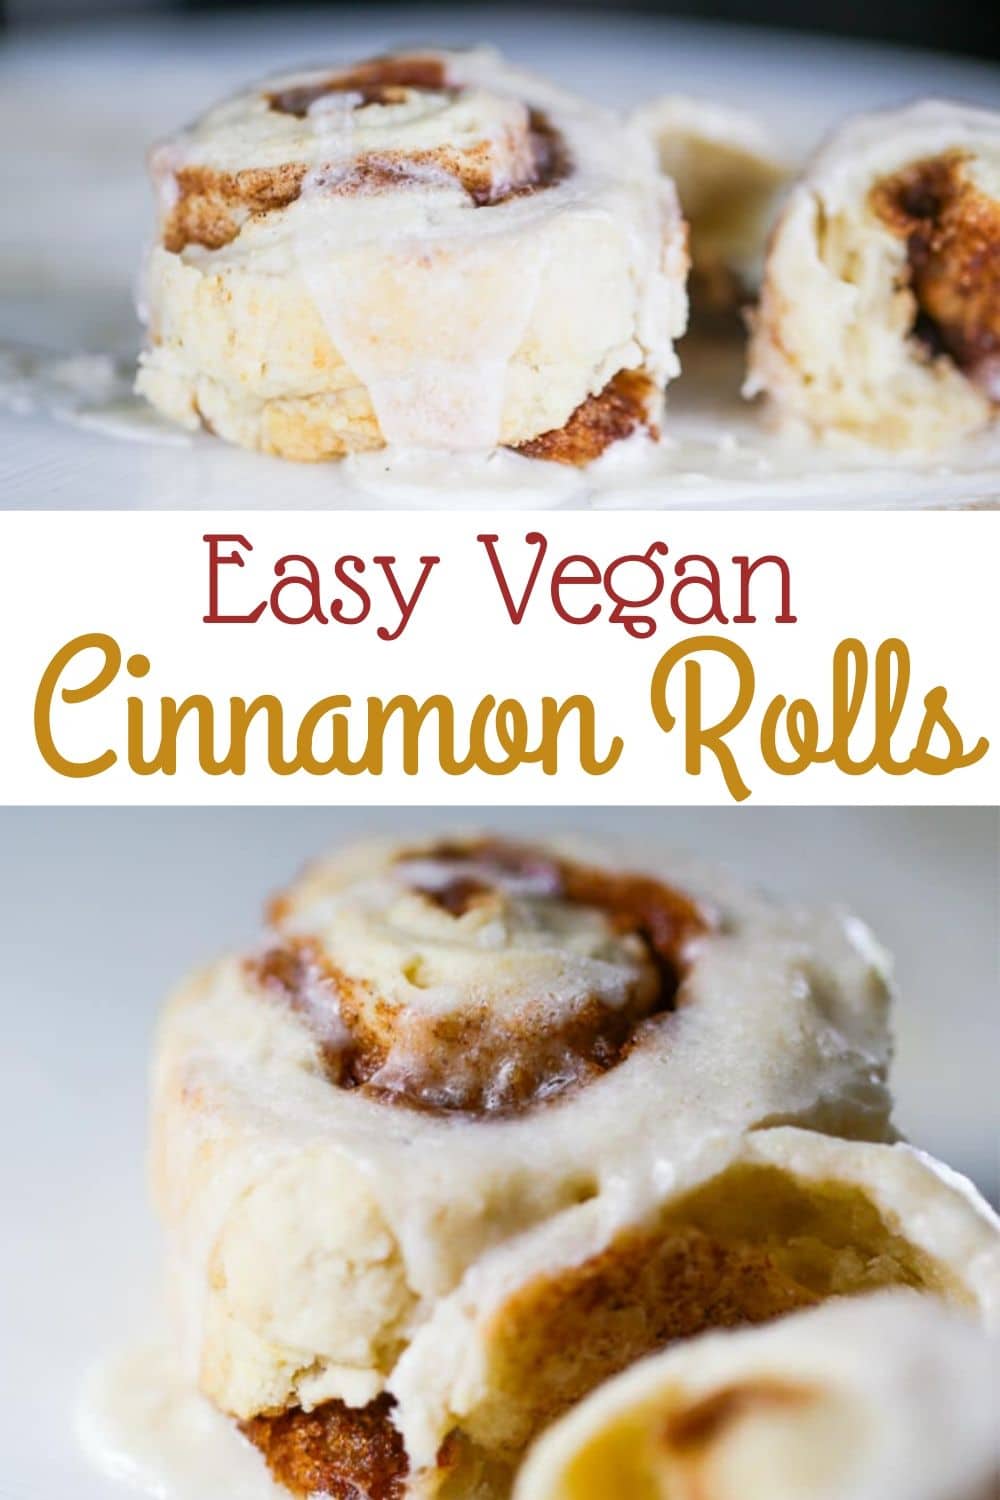 Easy Vegan Cinnamon Rolls for Pinterest